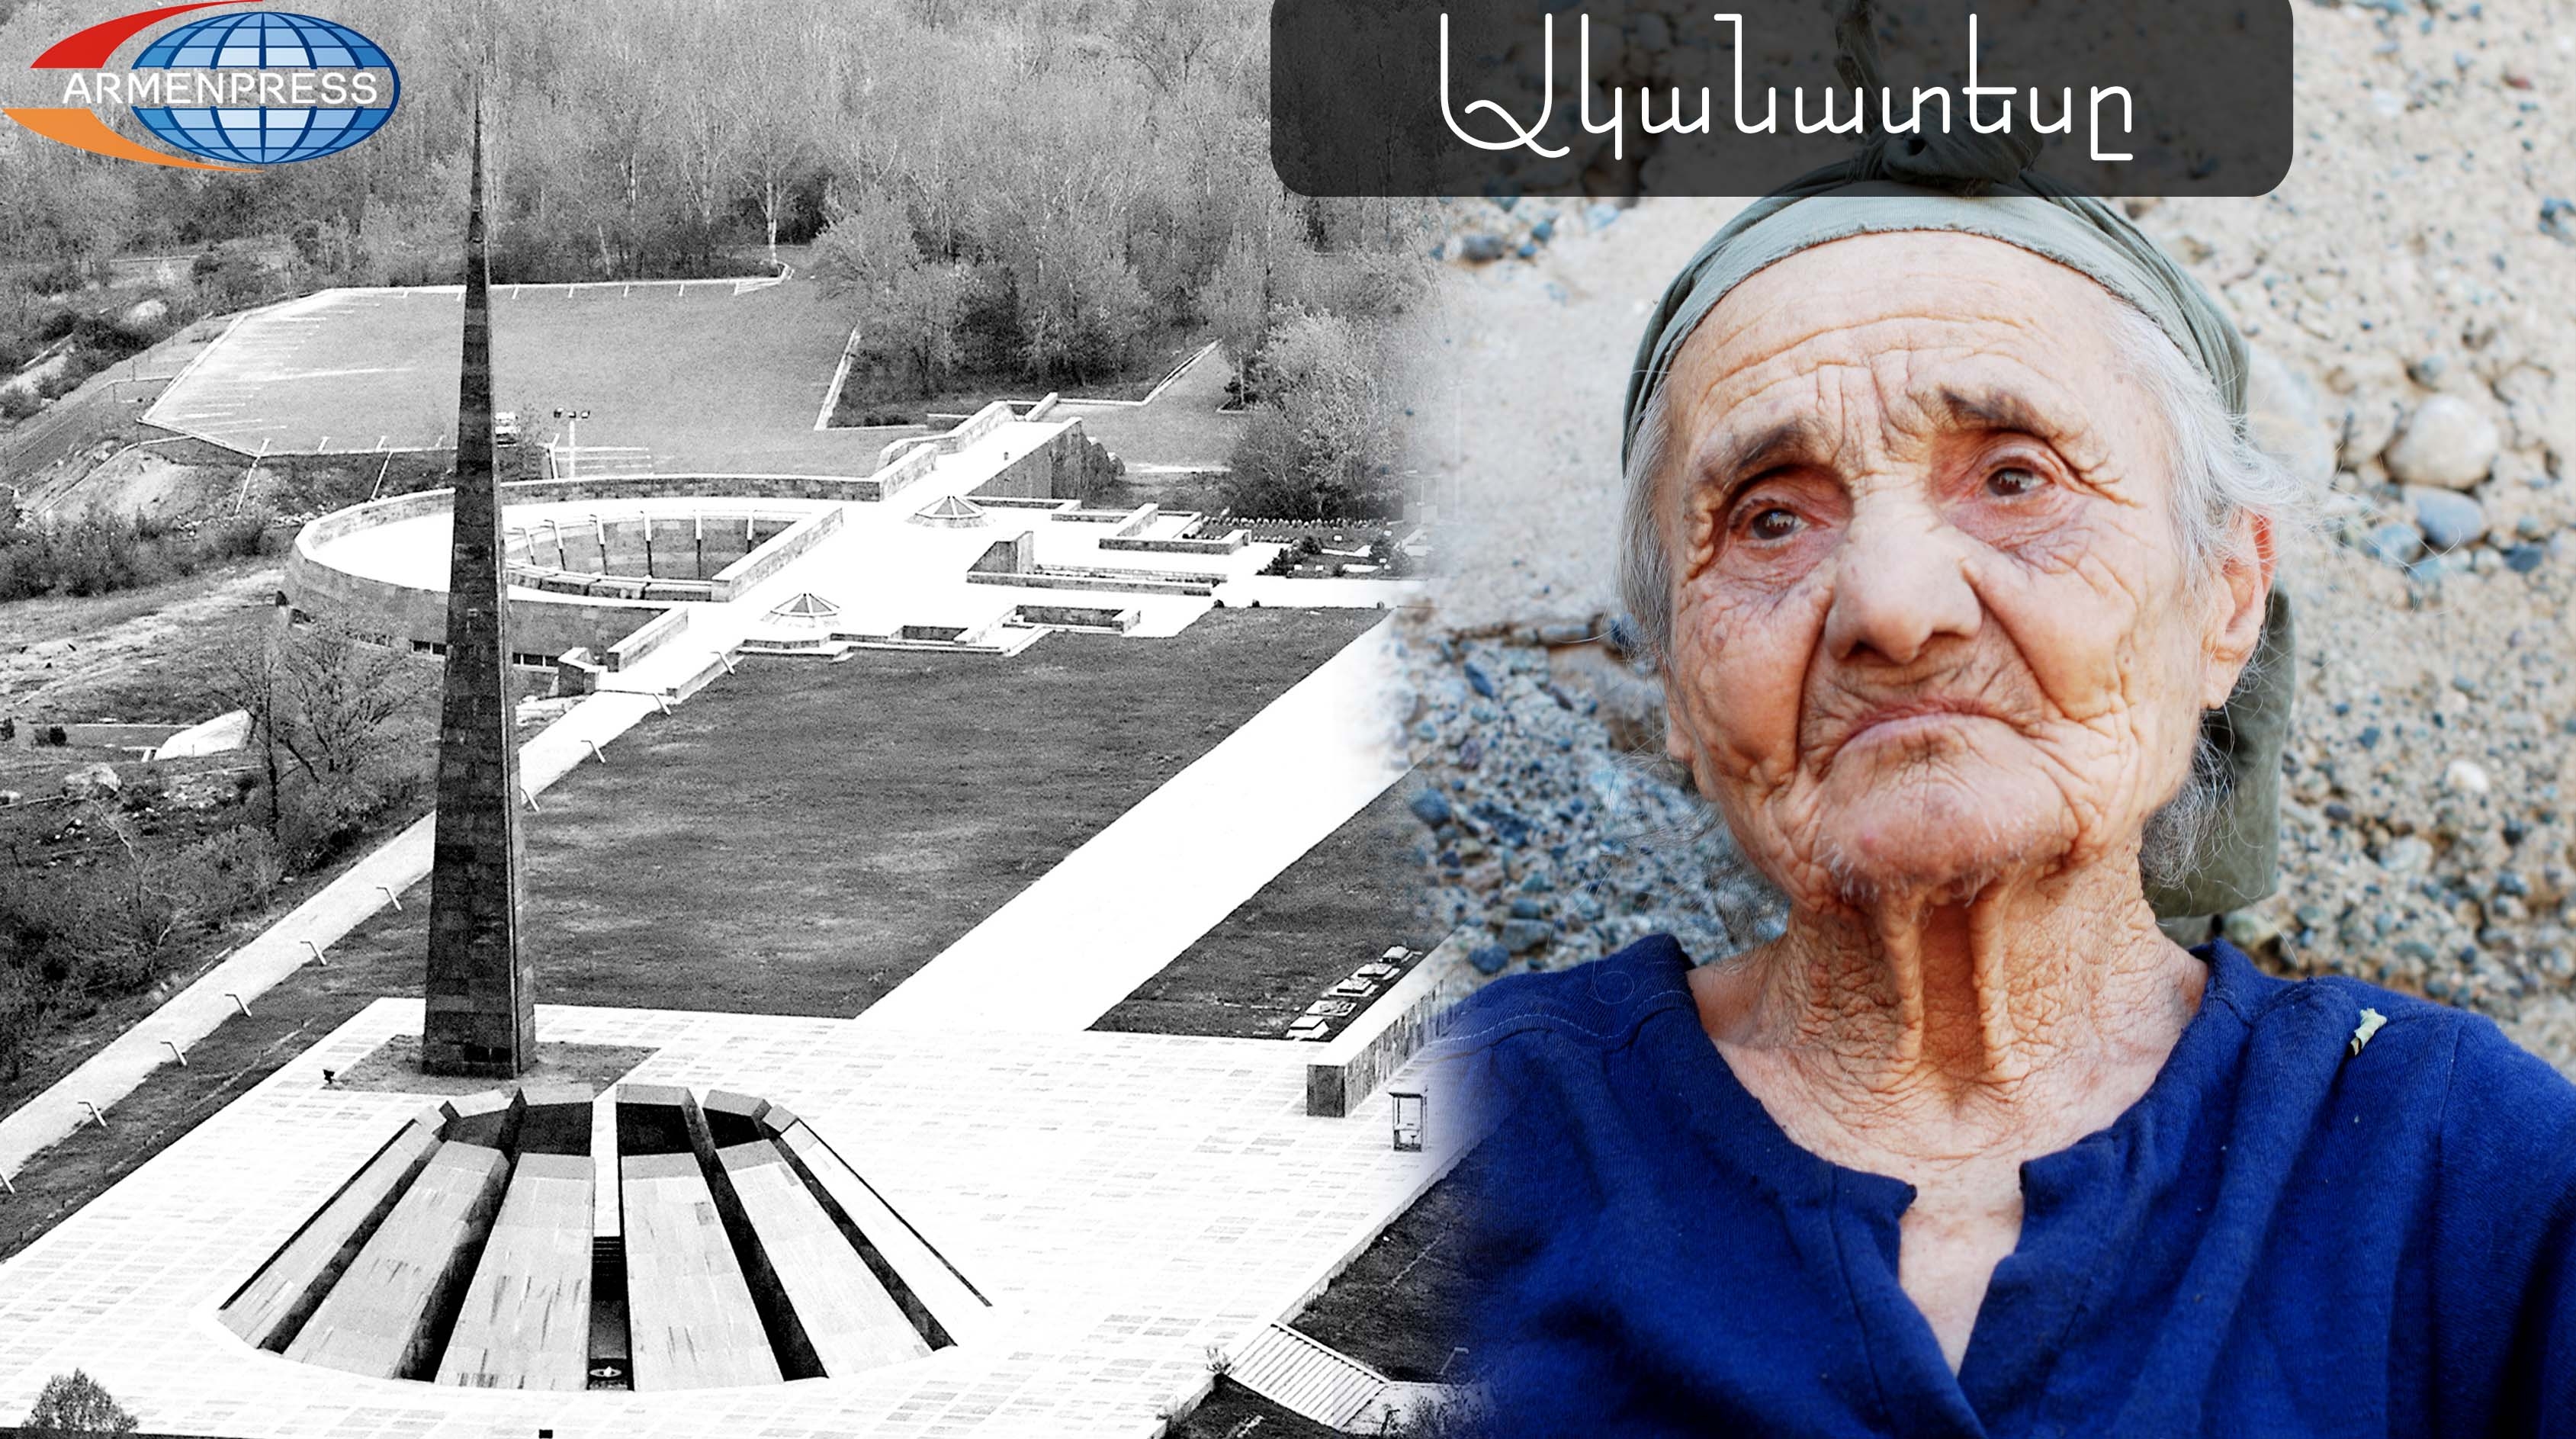 «Очевидец»:  Сказ о великой и многострадальной Муса лер в воспоминаниях 99-
летней 
Нектар Алатузян